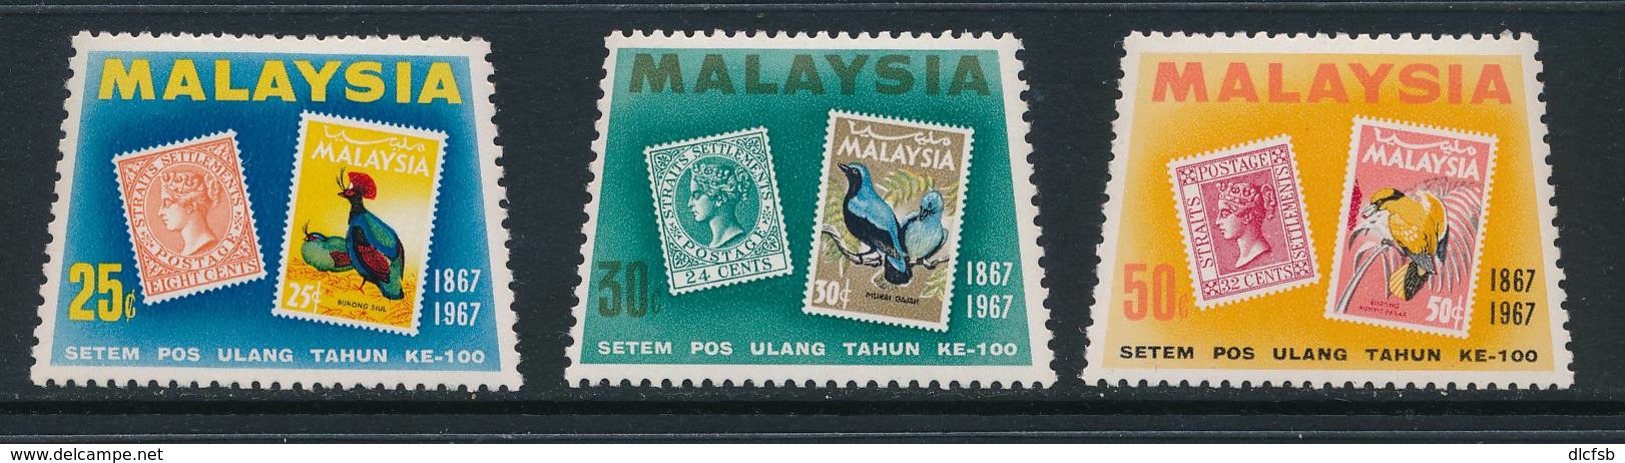 MALAYA, 1967 Stamp Centenary Set Unmounted Mint MNH, Cat £6 - Straits Settlements